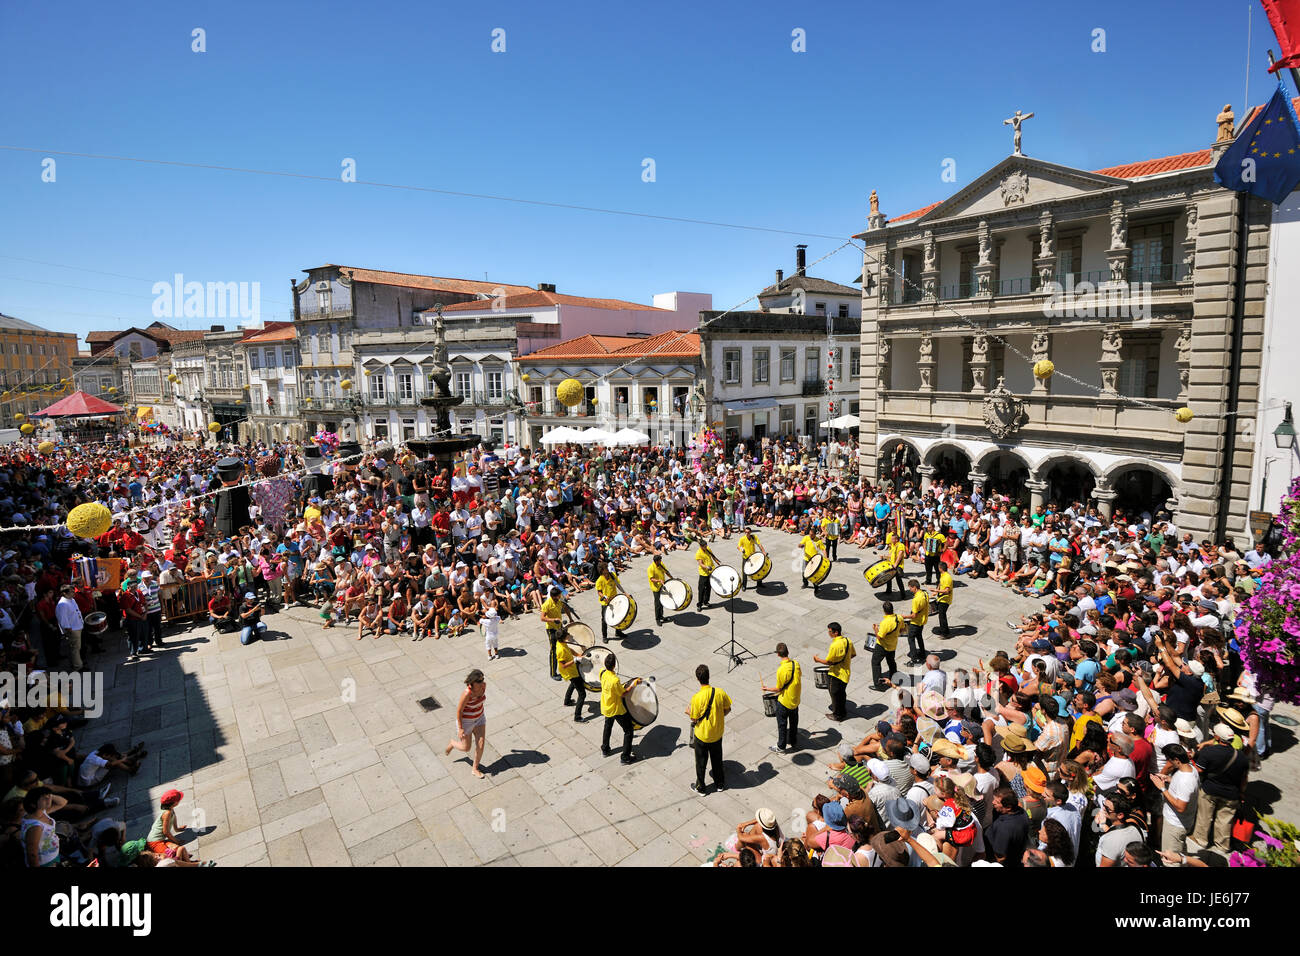 Percusionistas tradicionales (Zes Pereiras) actuando durante la festividad de Nuestra Señora de la Agonía, el mayor festival tradicional en Portugal. Viana do Castelo. Foto de stock